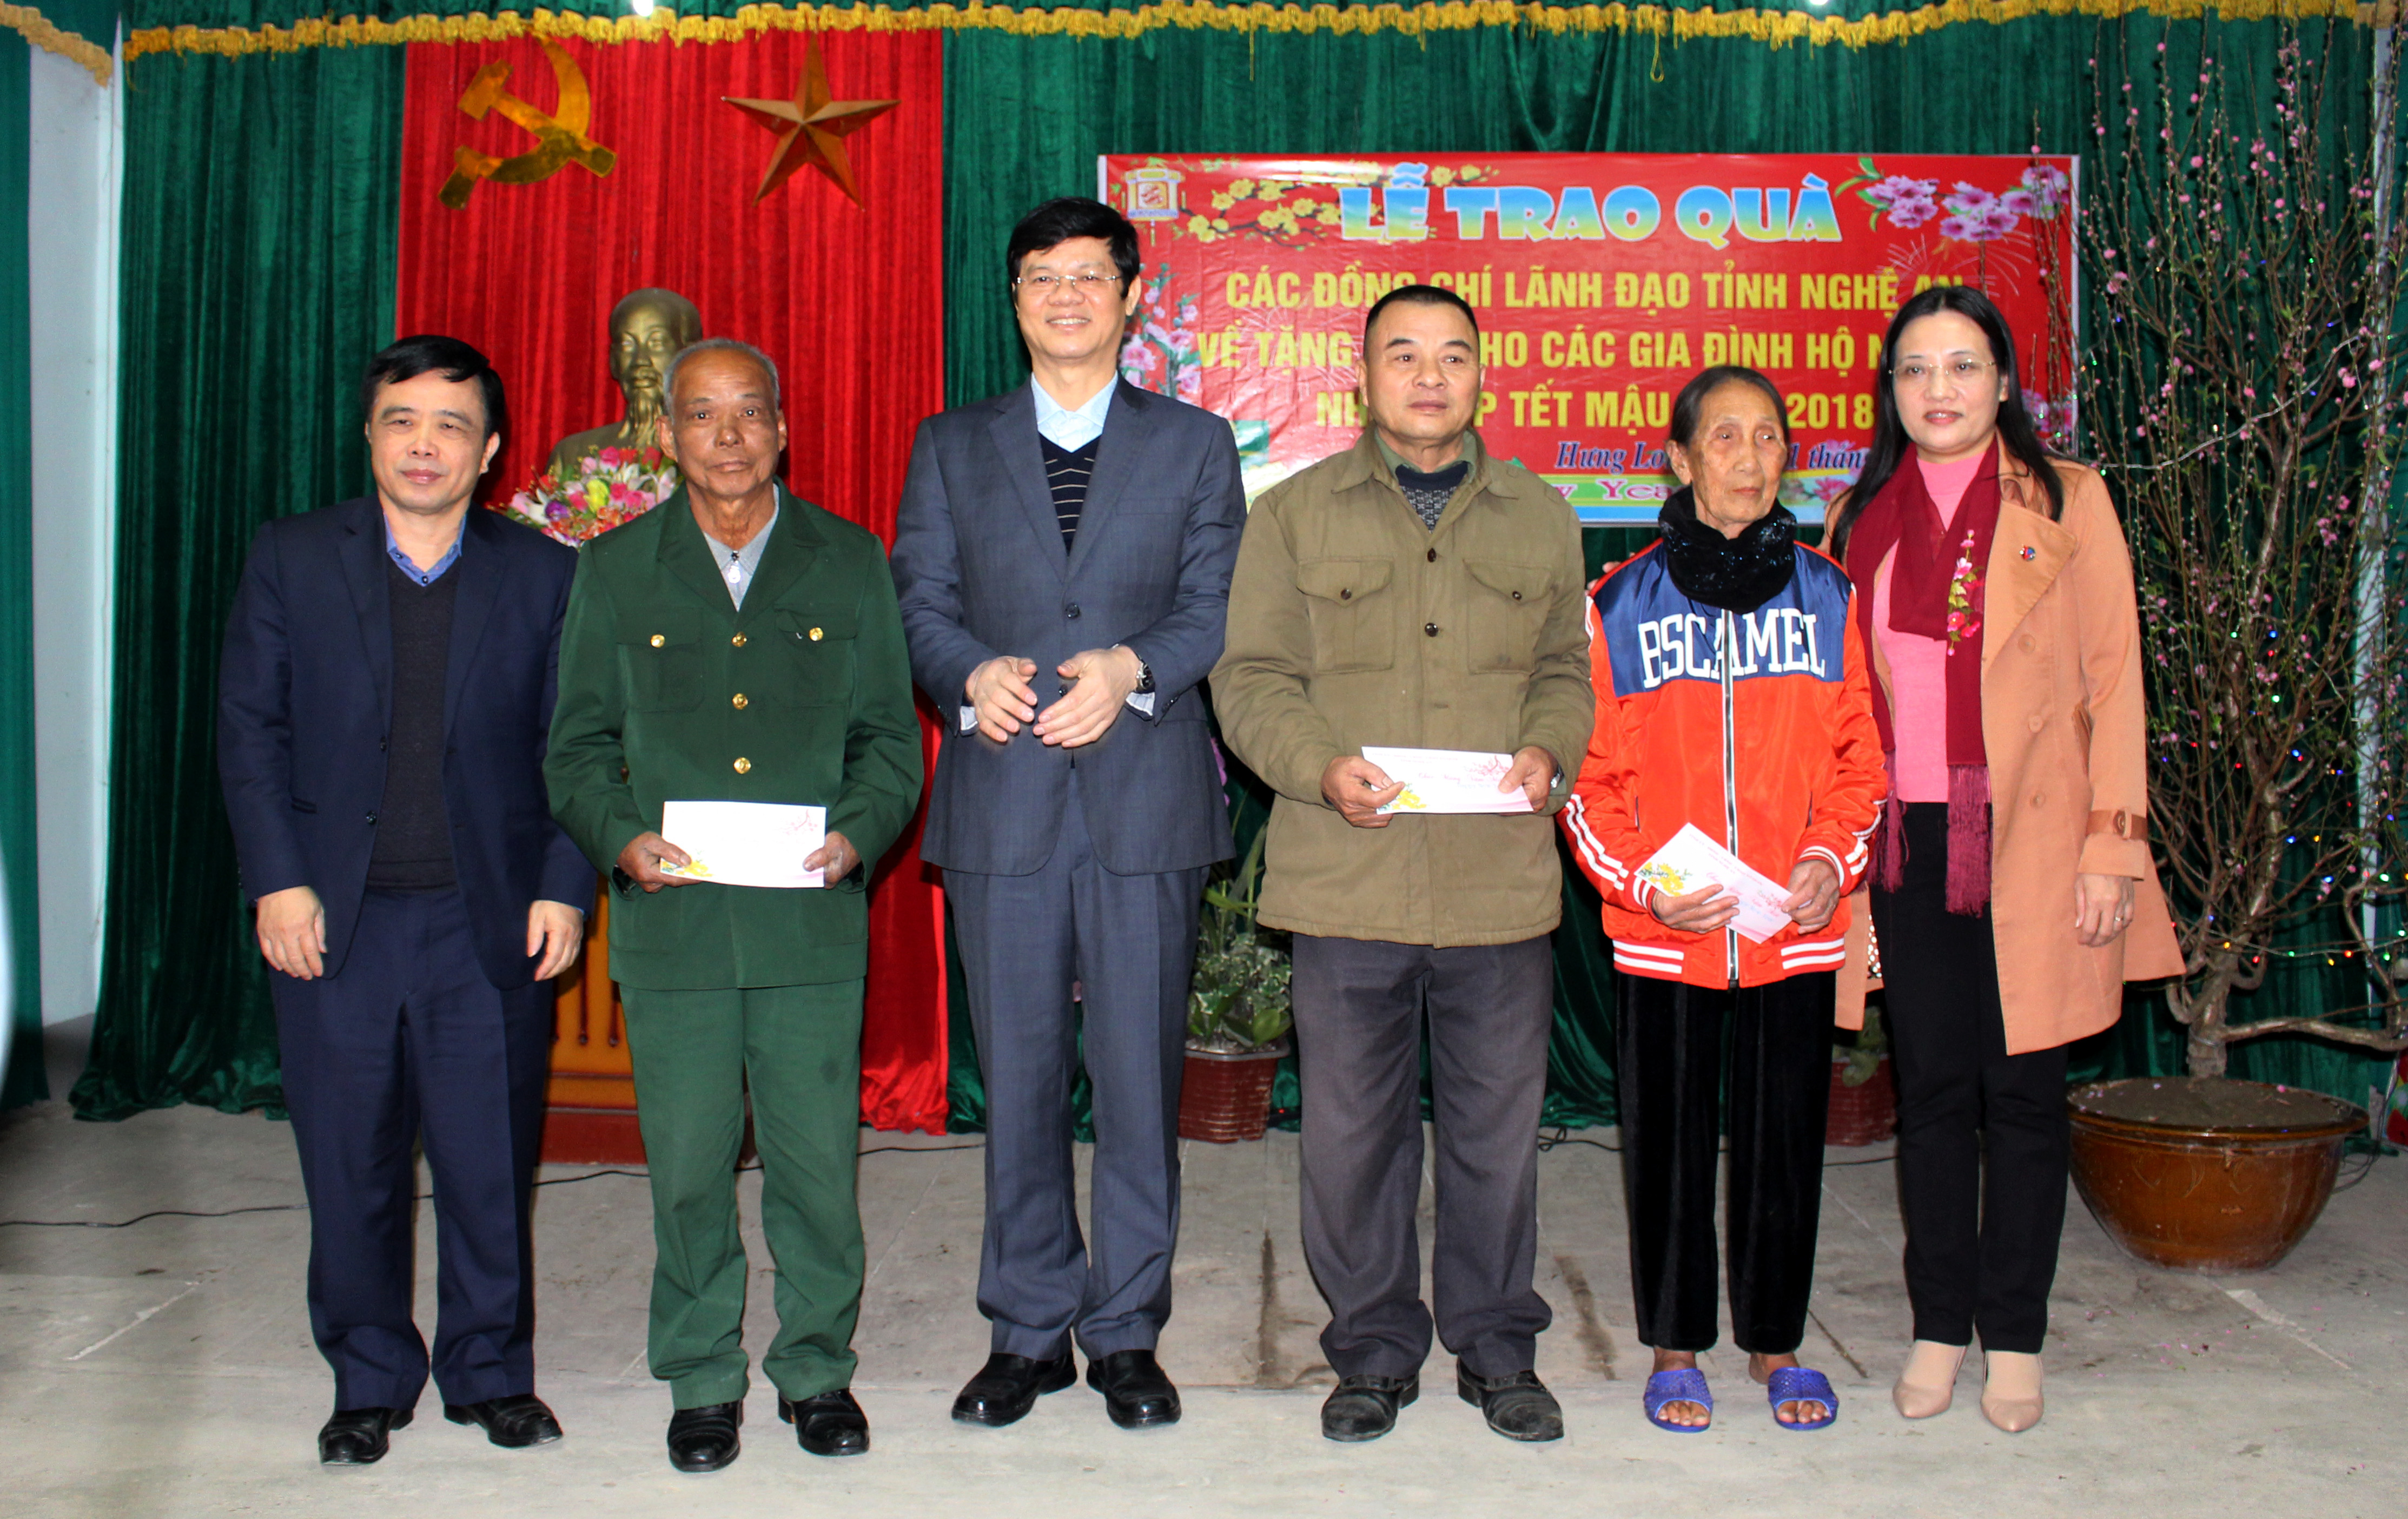 53 hộ nghèo và 3 gia đình chính sách tại xã Hưng Long, huyện Hưng Nguyên đã được đón nhận những món quà Tết ý nghĩa trong dịp này. Ảnh: Đinh Nguyệt